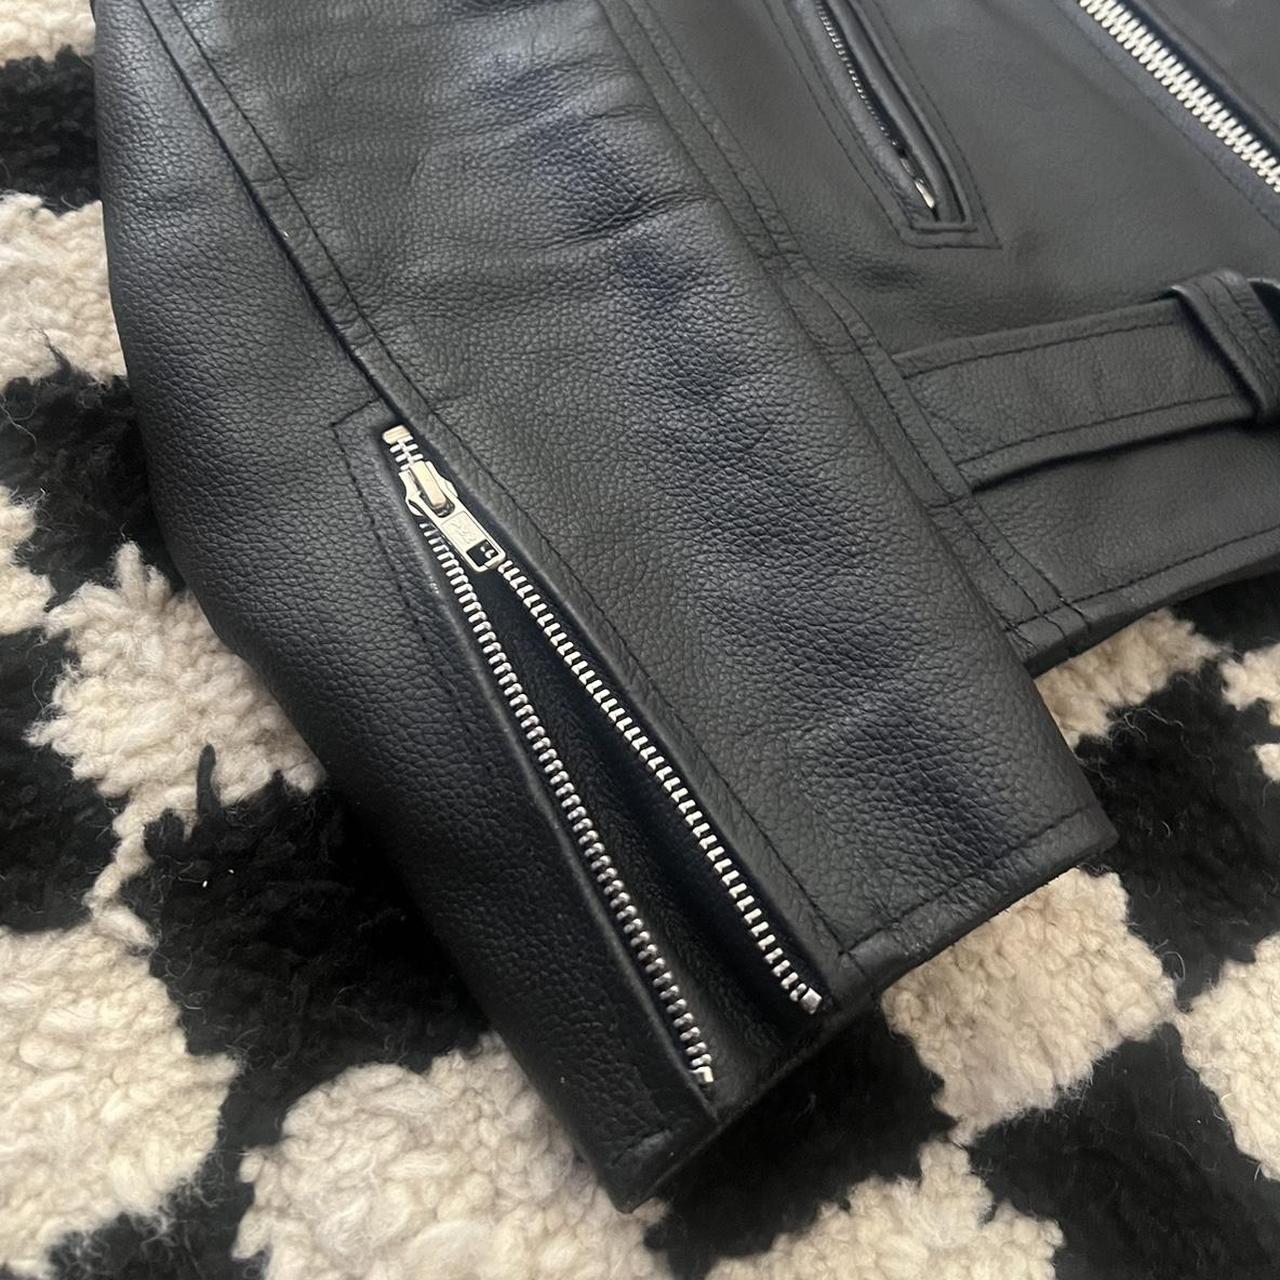 Reclaimed Vintage Leather Biker Jacket With Back Print